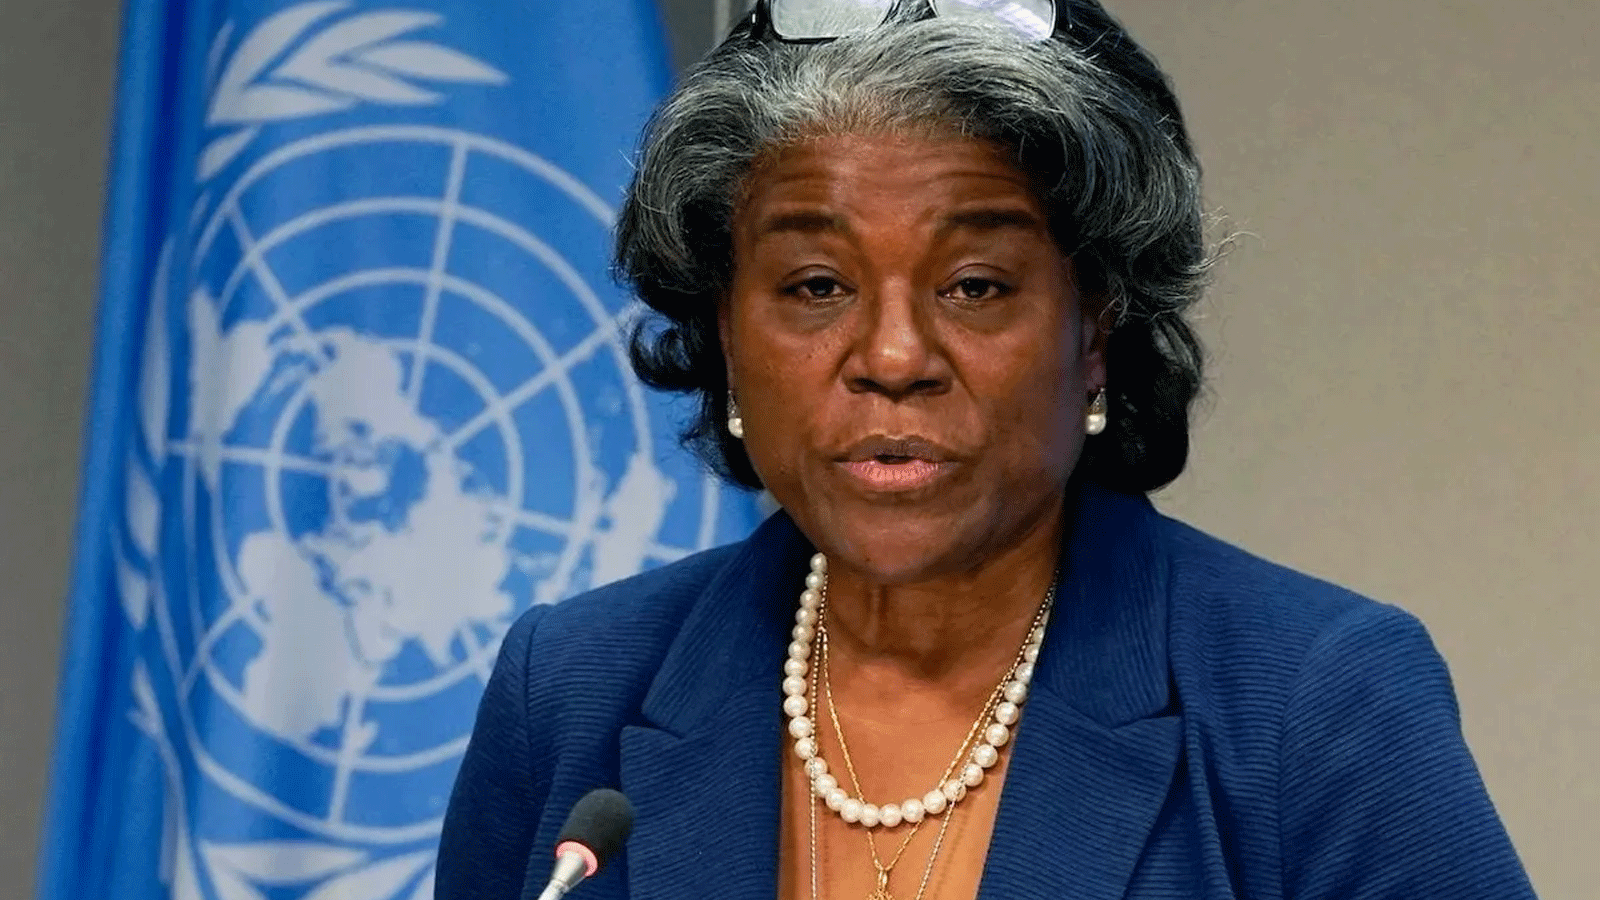 سفيرة الولايات المتحدة لدى الأمم المتحدة، ليندا توماس غرينفيلد، في مقر الأمم المتحدة\ نيويورك. 1 مارس / آذار 2021